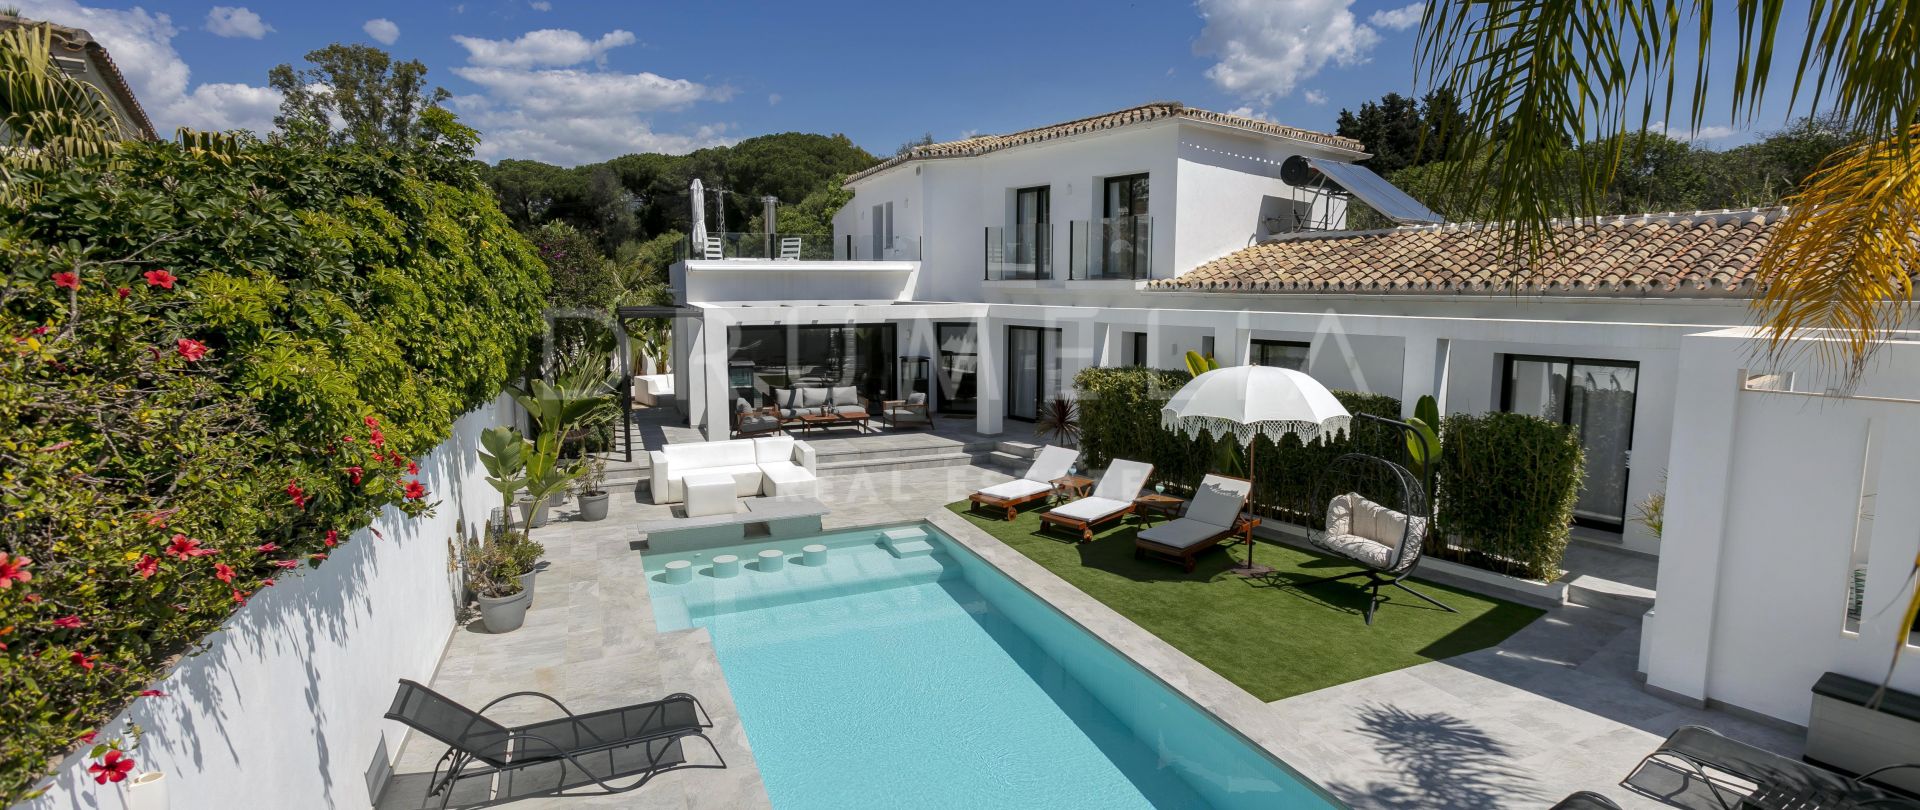 Villa for salg i Marbella - Puerto Banus, Marbella (Alle)